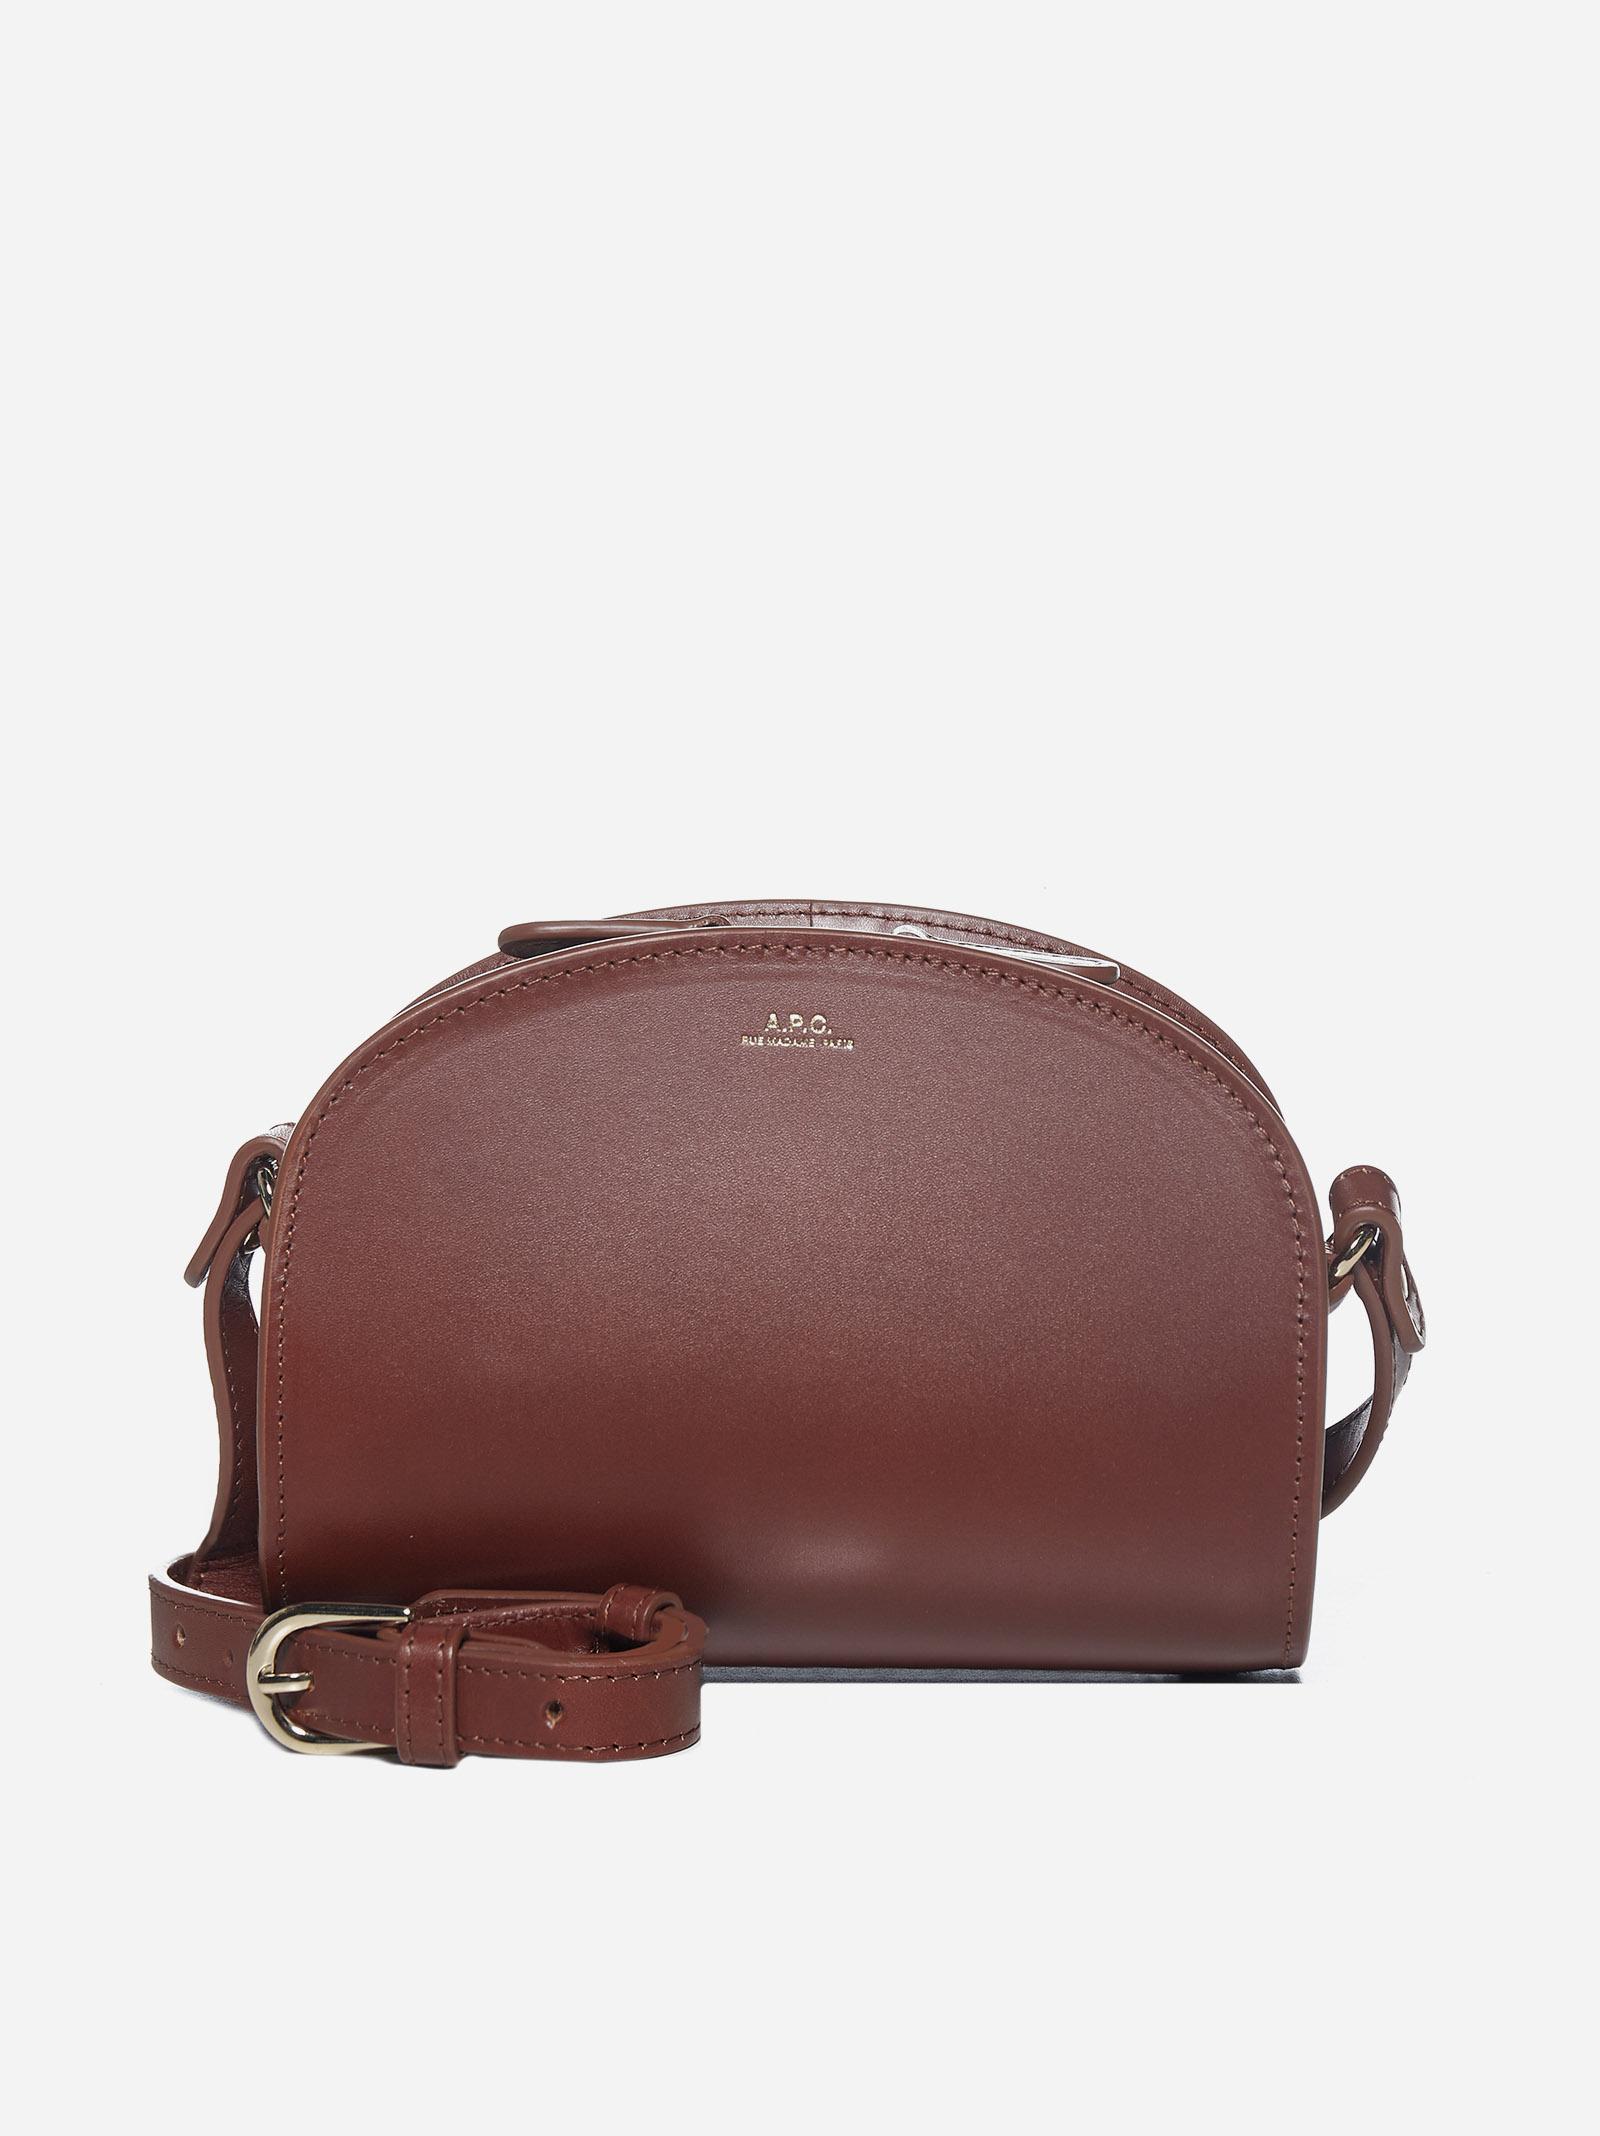 Half-moon Leather Mini Bag